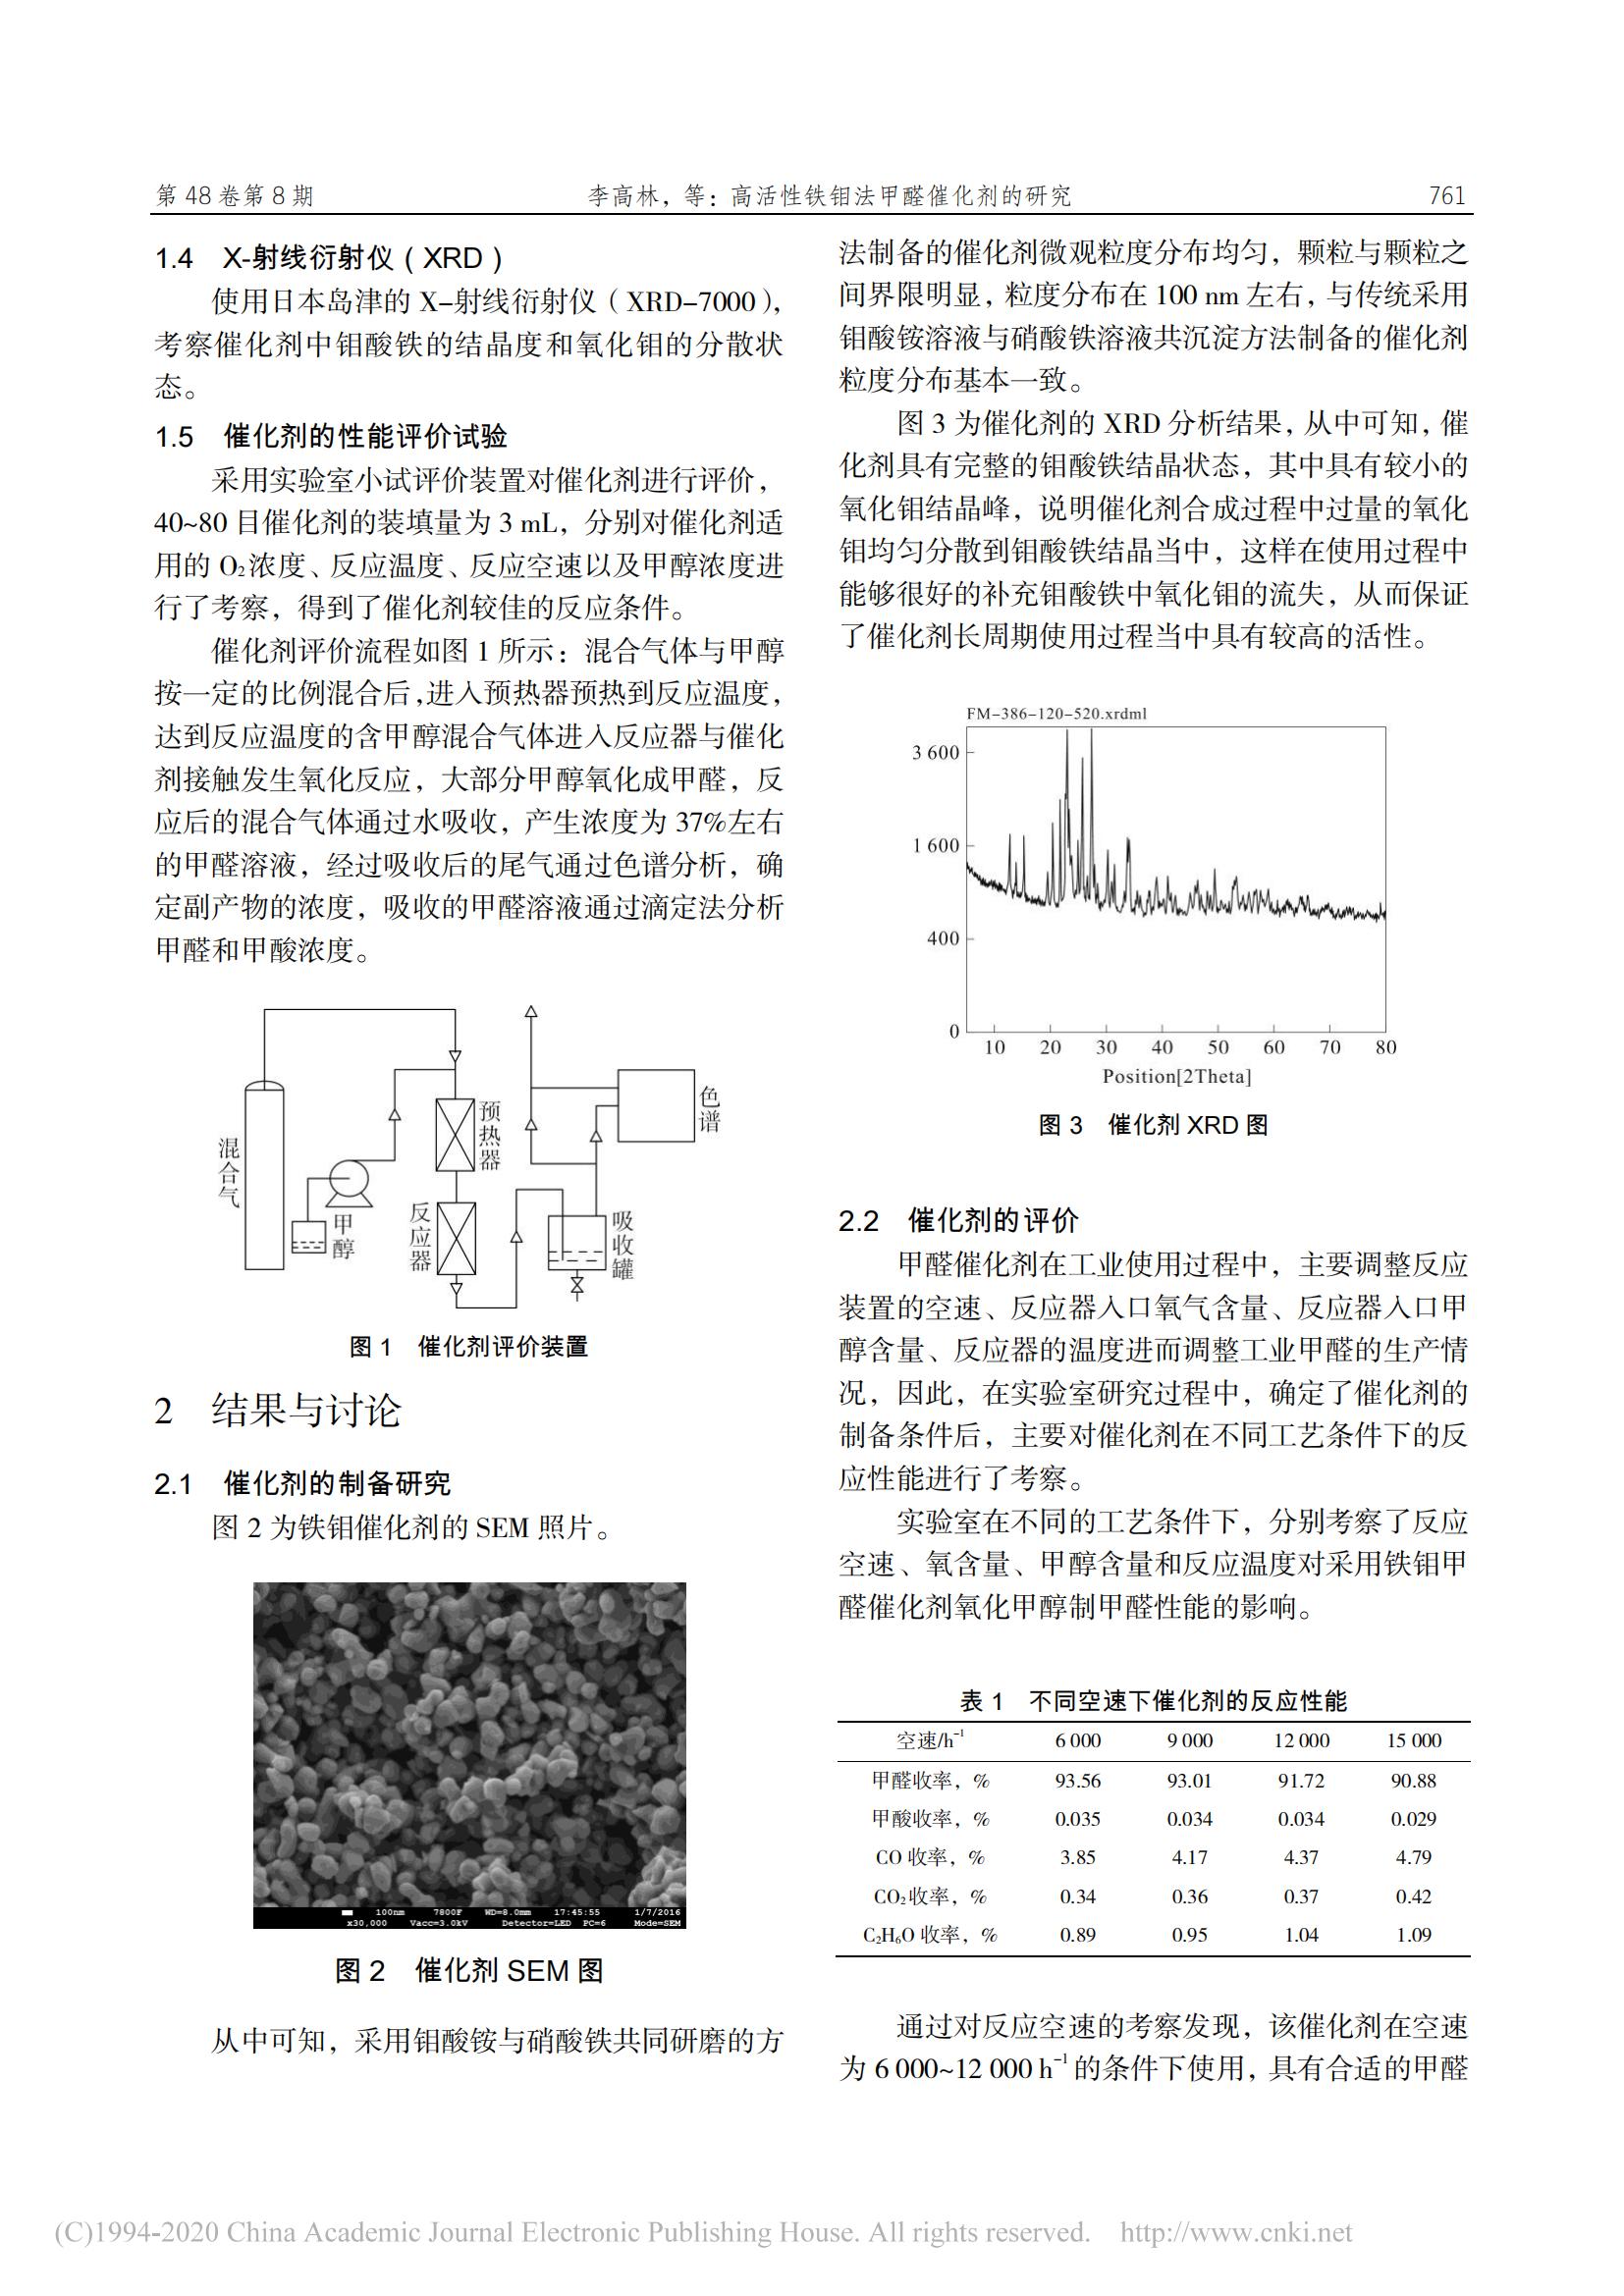 高活性铁钼法甲醛催化剂的研究_李高林_01.jpg